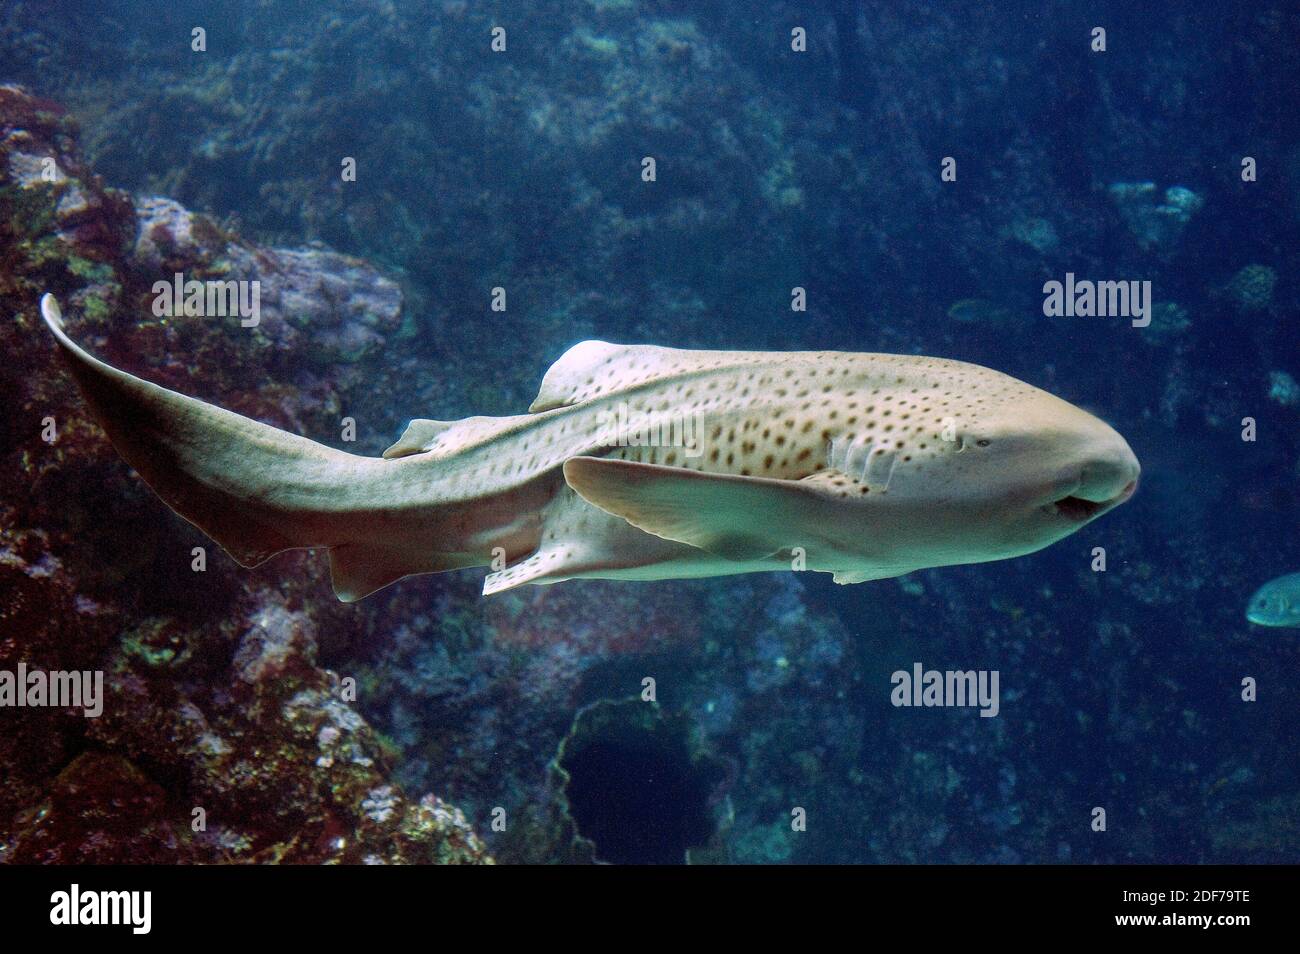 El tiburón cebra (Stegostoma fasciatum) es un pez cartilaginoso nativo de las costas del Océano Indo-Pacífico. Foto de stock